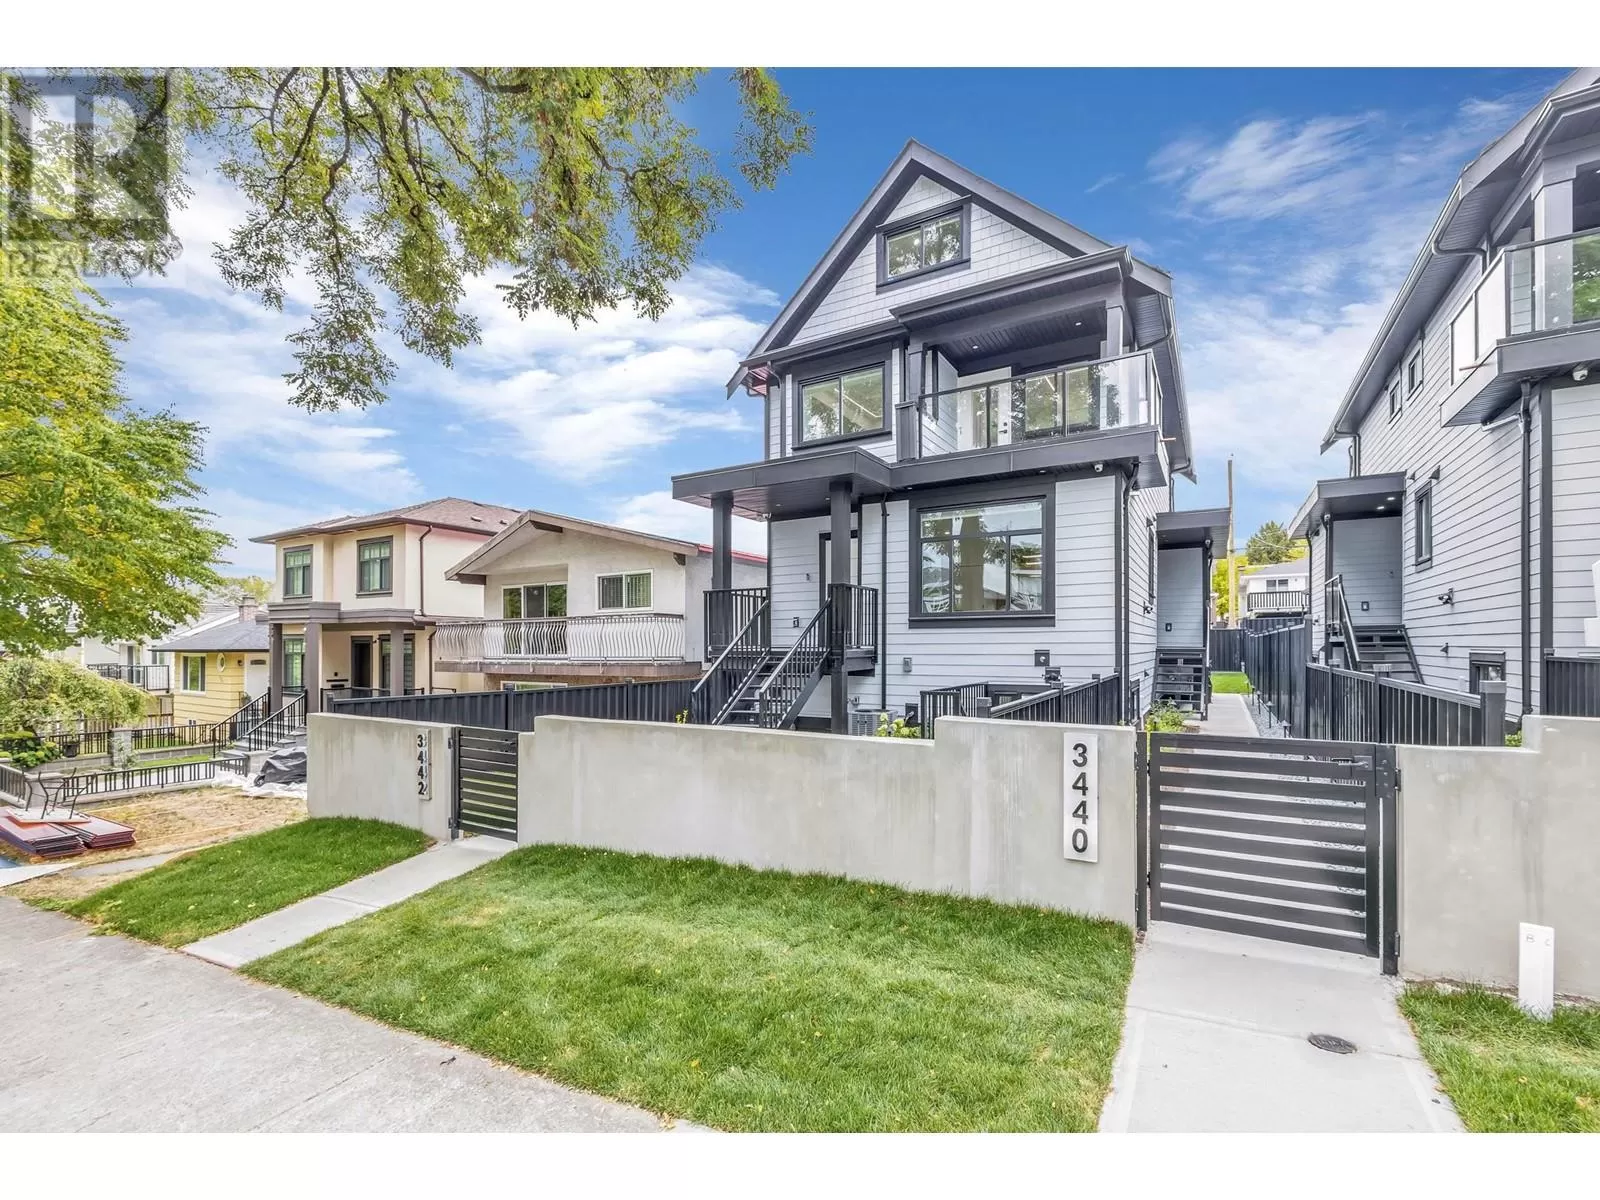 Duplex for rent: 3440 E 4th Avenue, Vancouver, British Columbia V5M 1L9